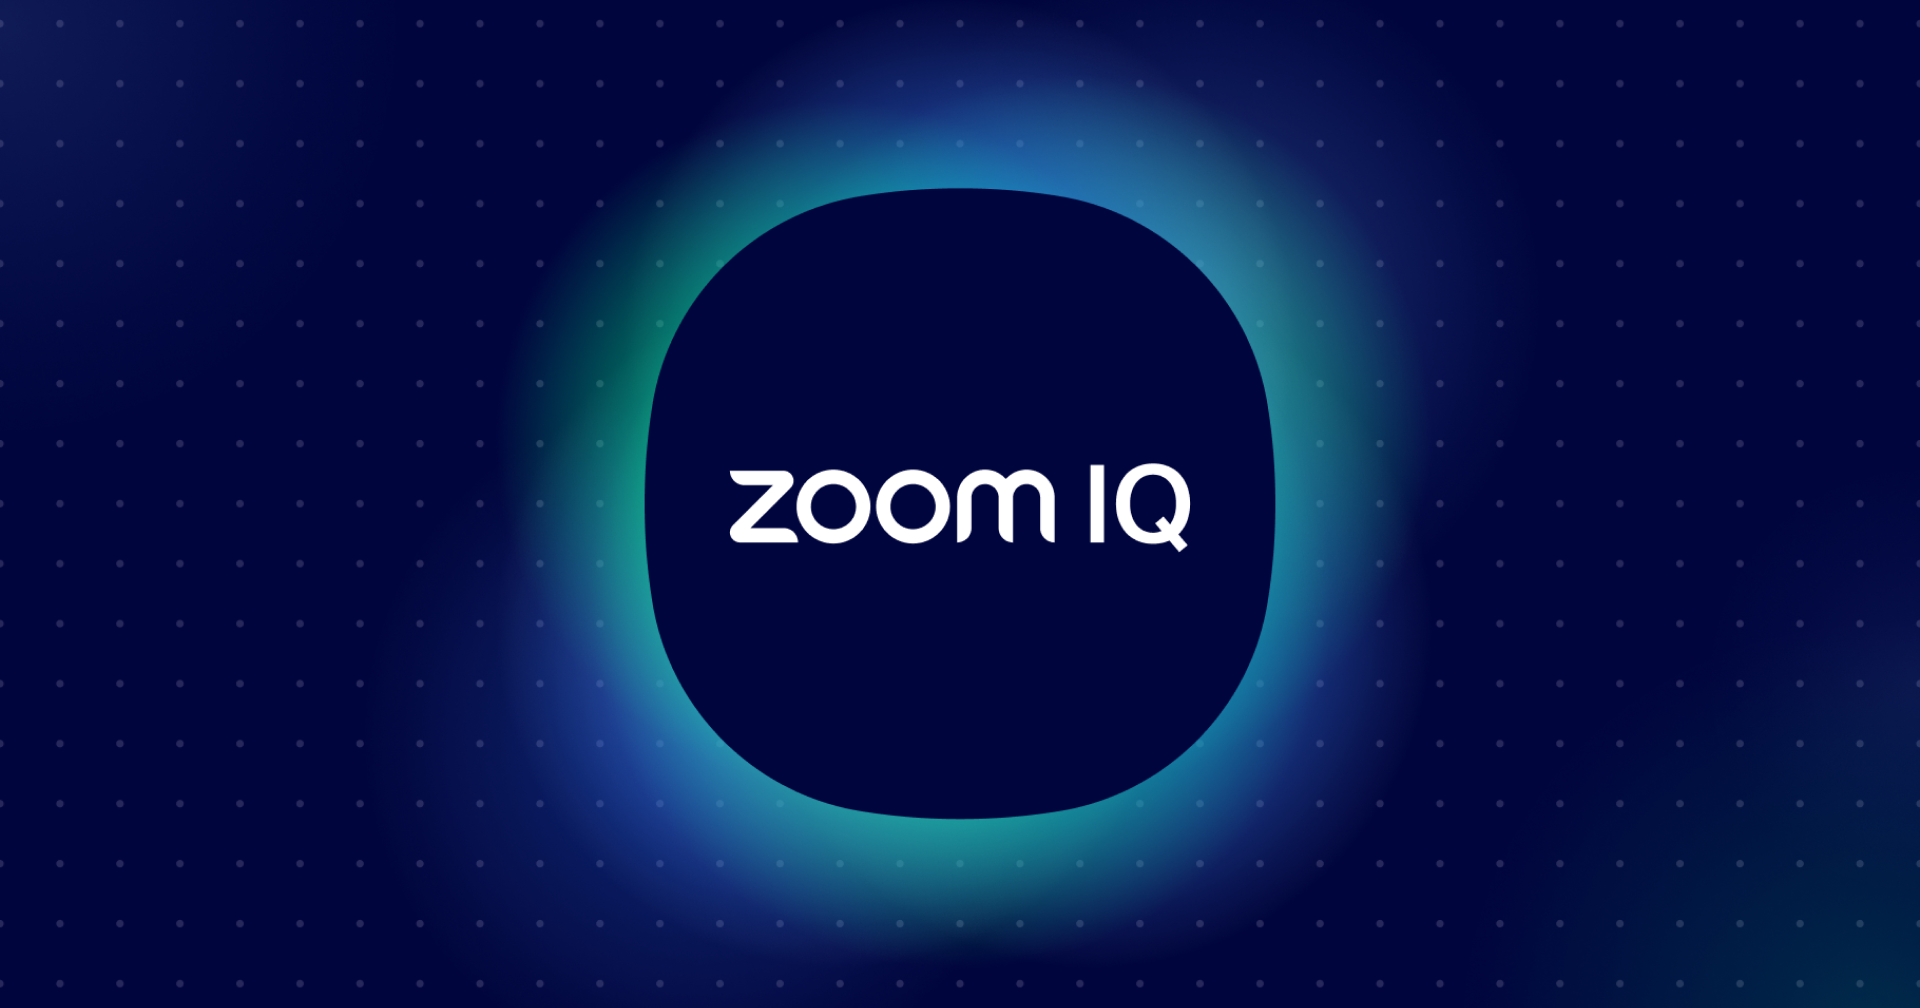 Zoom เพิ่มความสามารถใหม่ใน Zoom IQ ด้วยพลัง AI จาก OpenAI